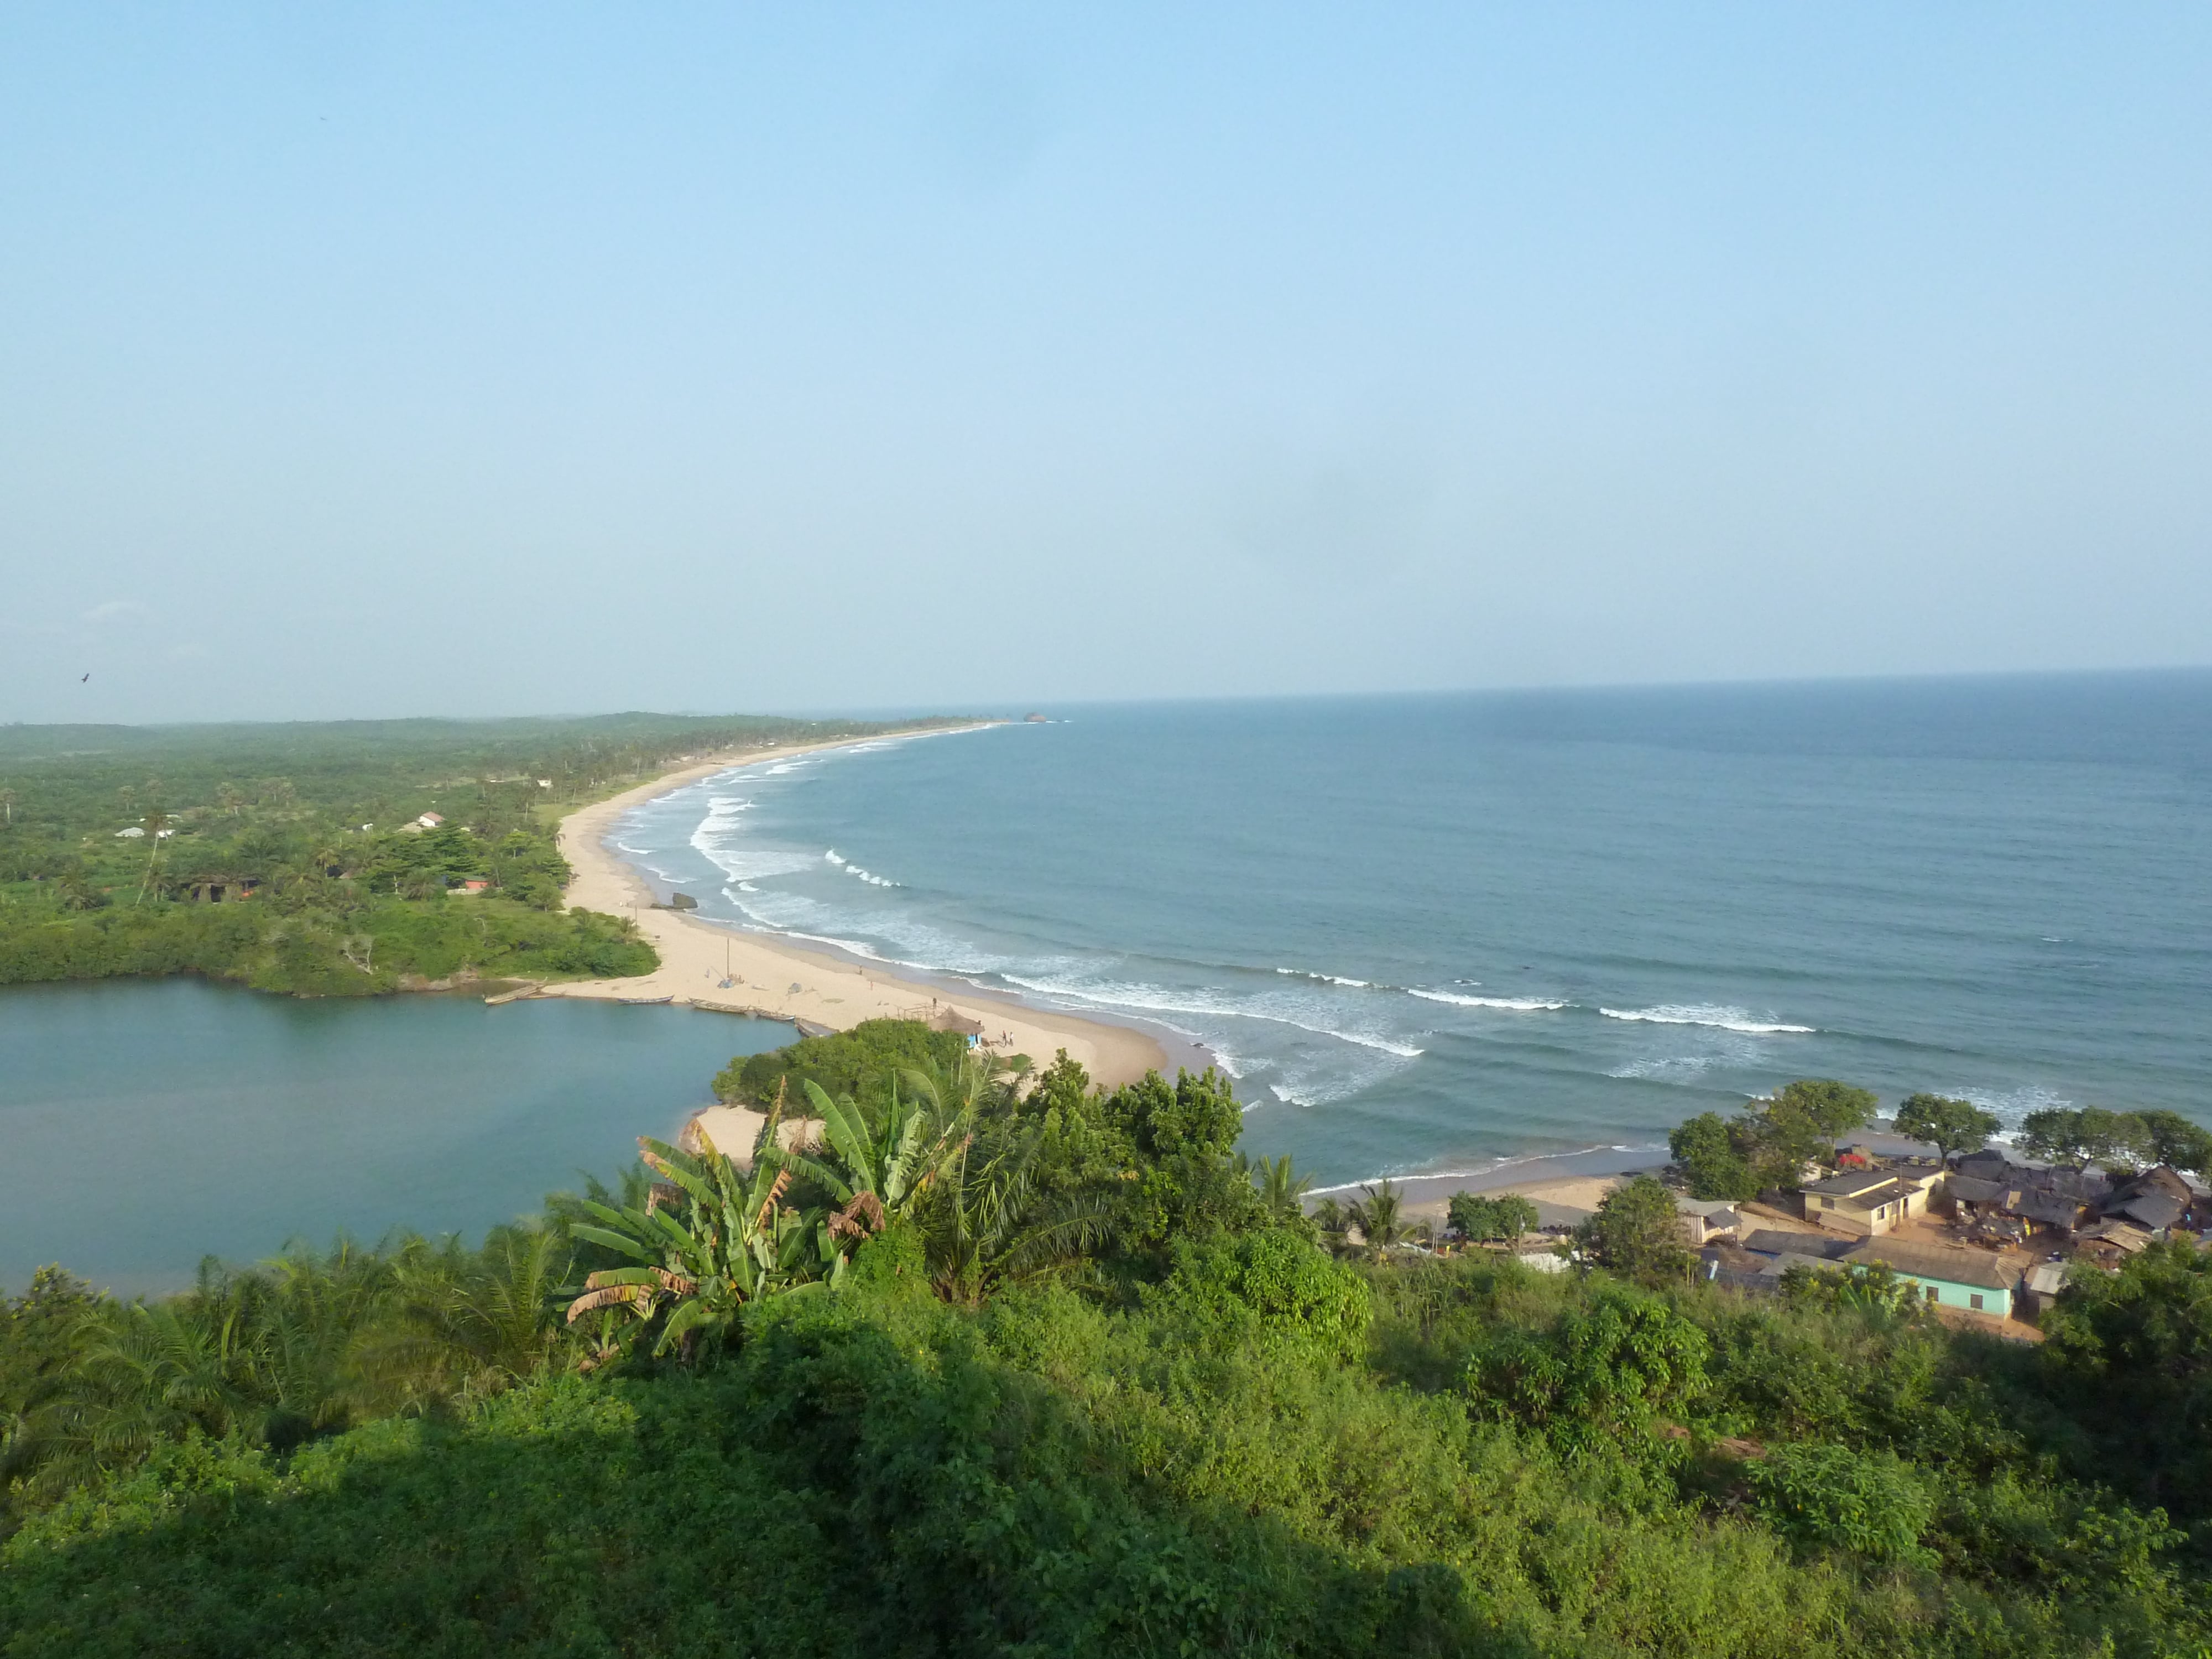 ghana tourism authority western region